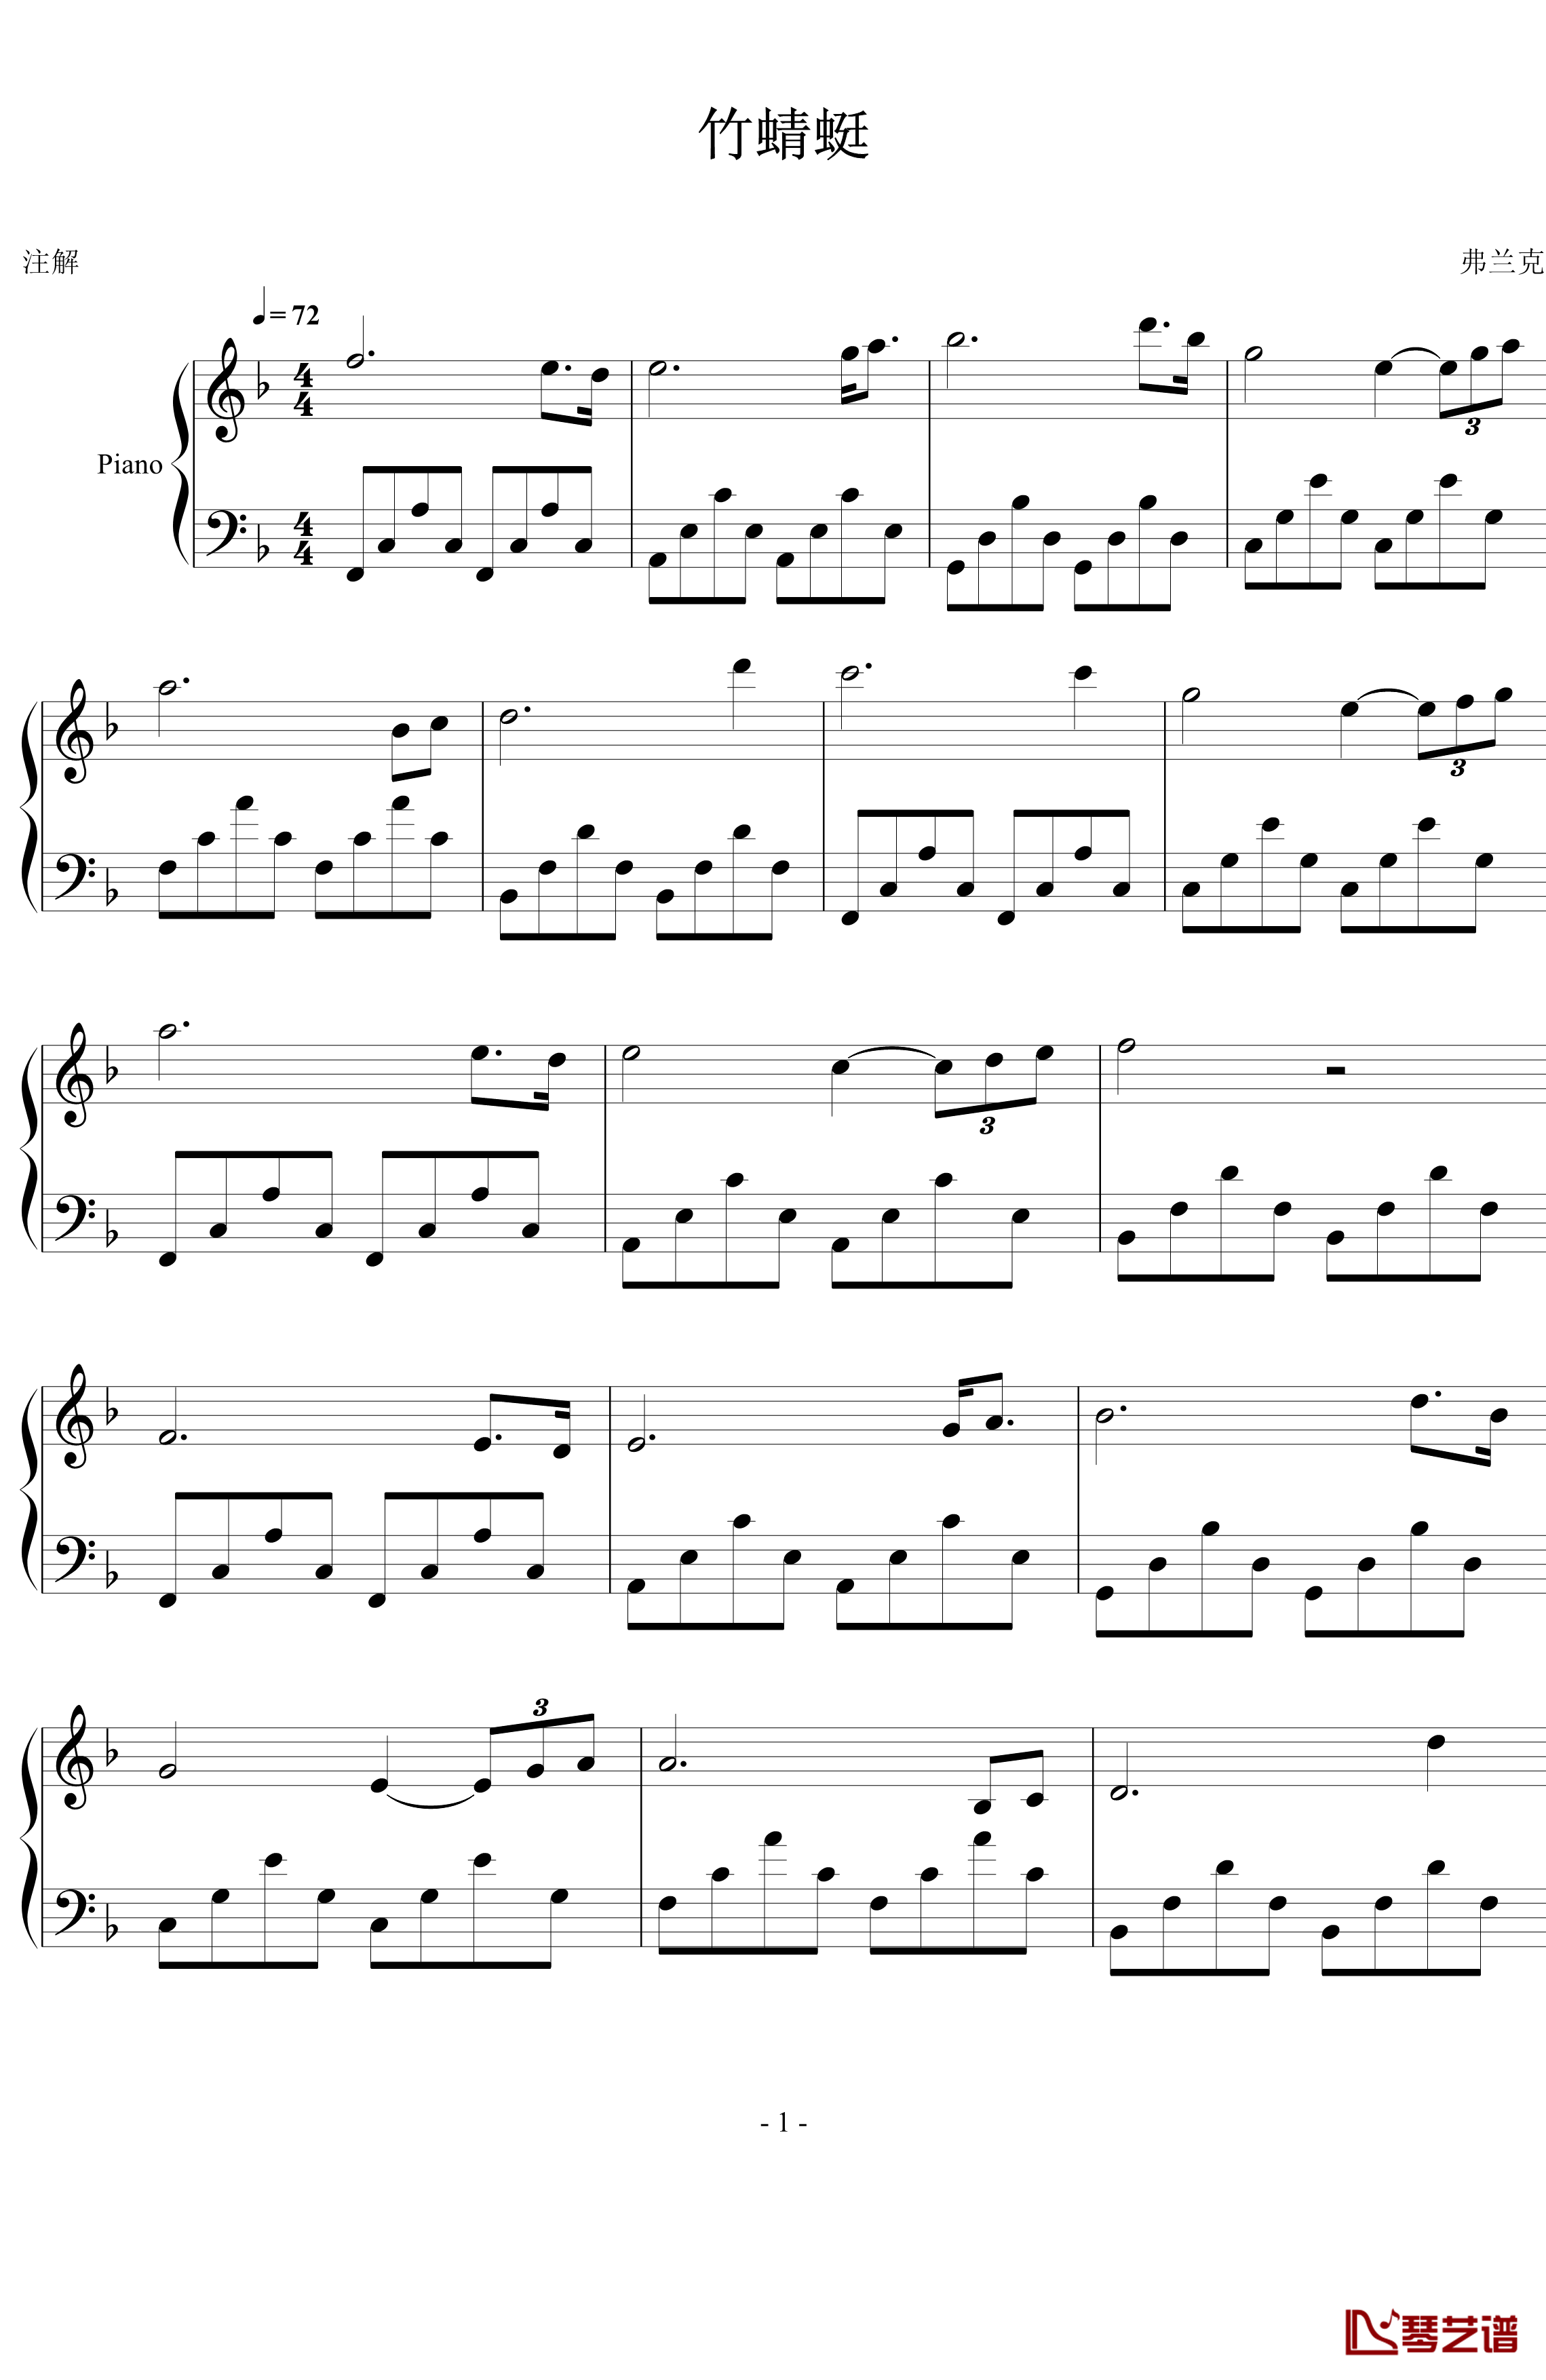 竹蜻蜓钢琴谱-弗兰克1